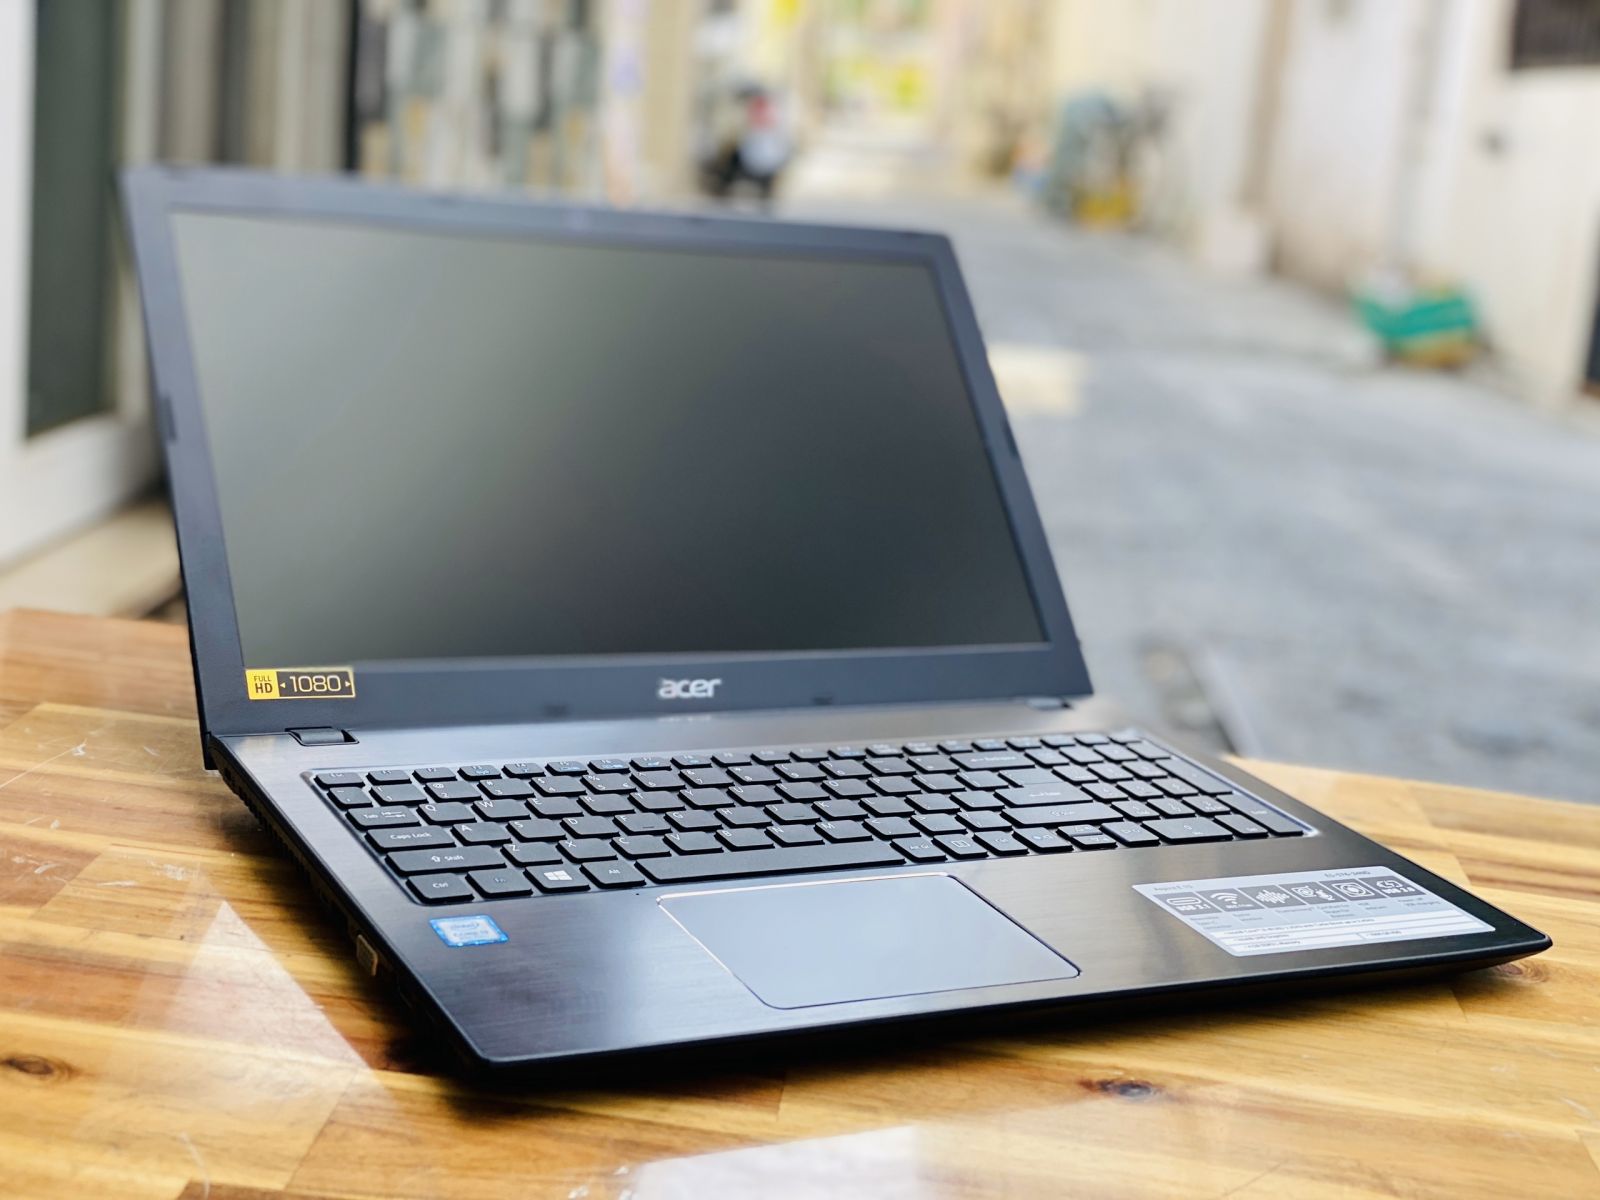 Đánh giá chi tiết Laptop Acer E5 576G 